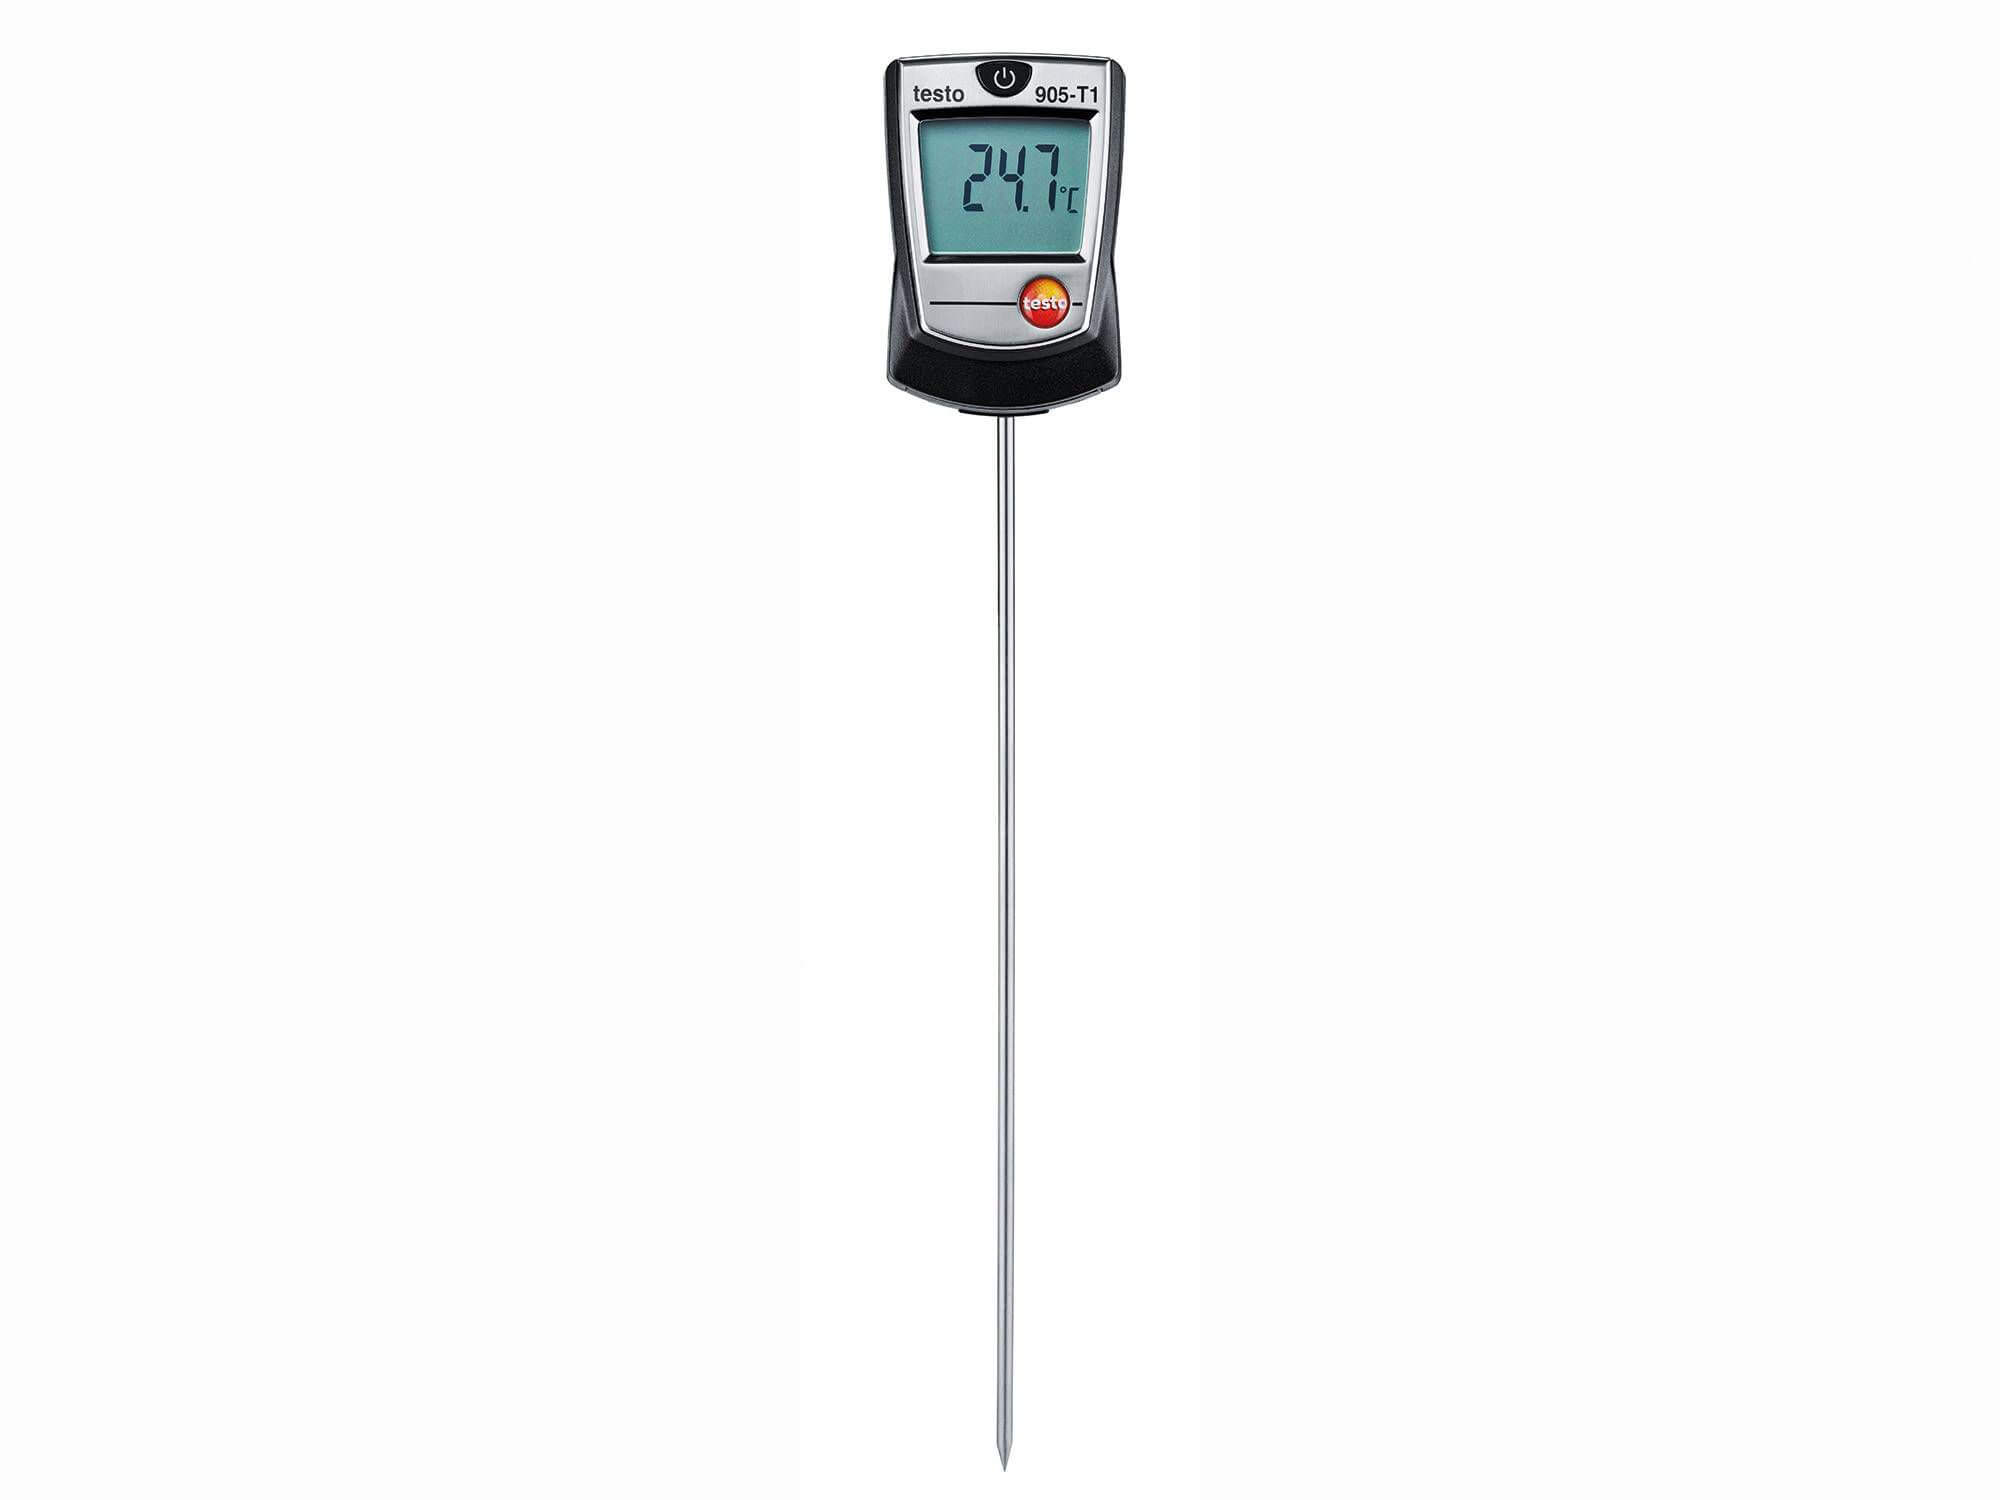 Máy đo nhiệt độ – testo 905 T1